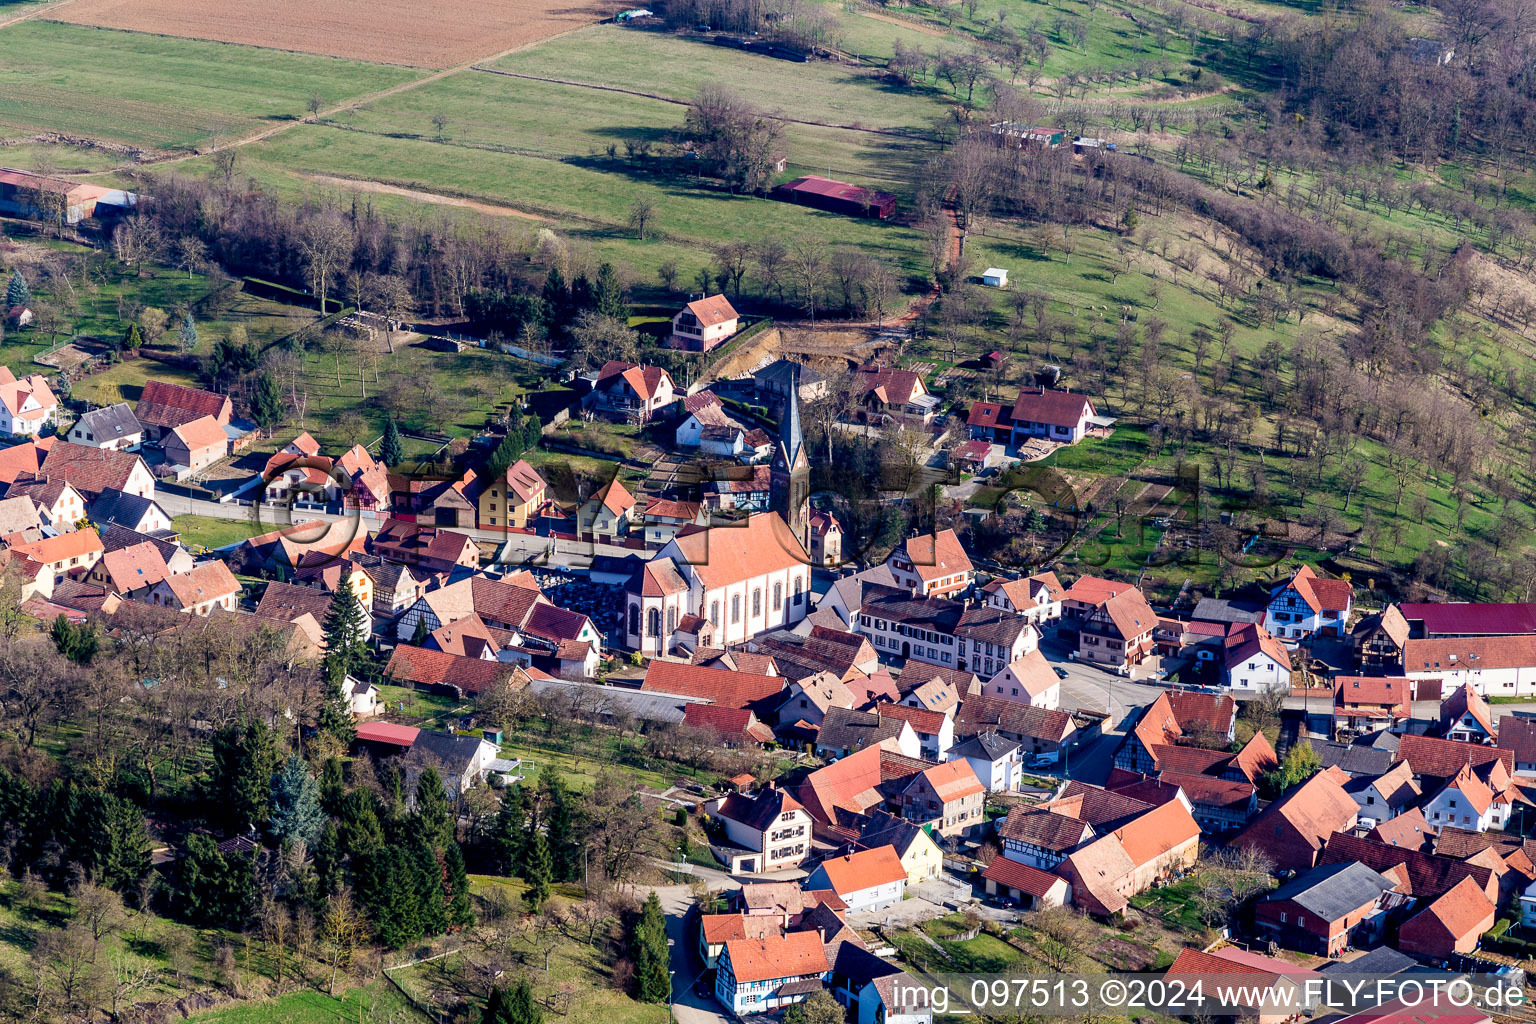 Vue aérienne de Bâtiment d'église au centre du village à Ettendorf dans le département Bas Rhin, France